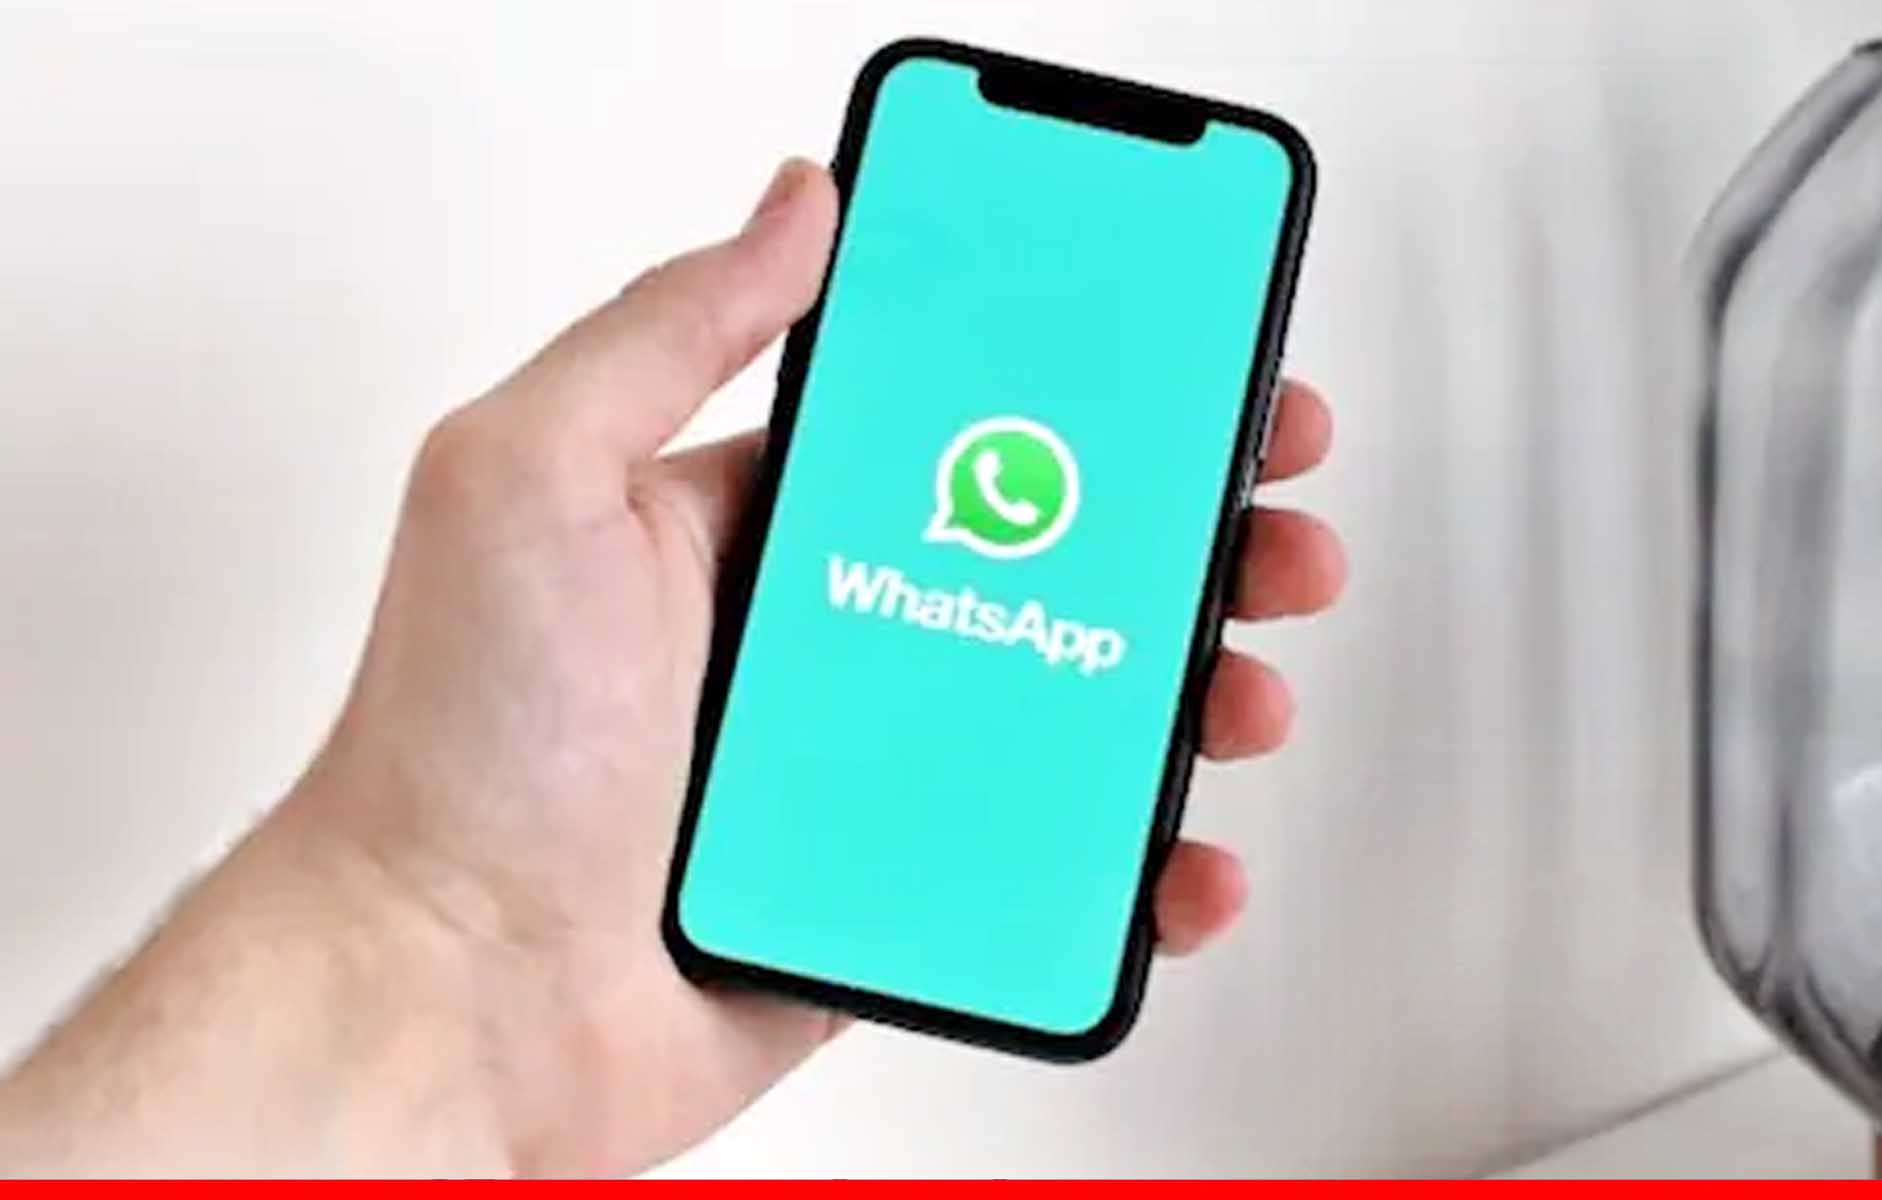 WhatsApp के नए बीटा अपडेट से iOS यूजर्स भी भेज सकेंगे HD फोटोज